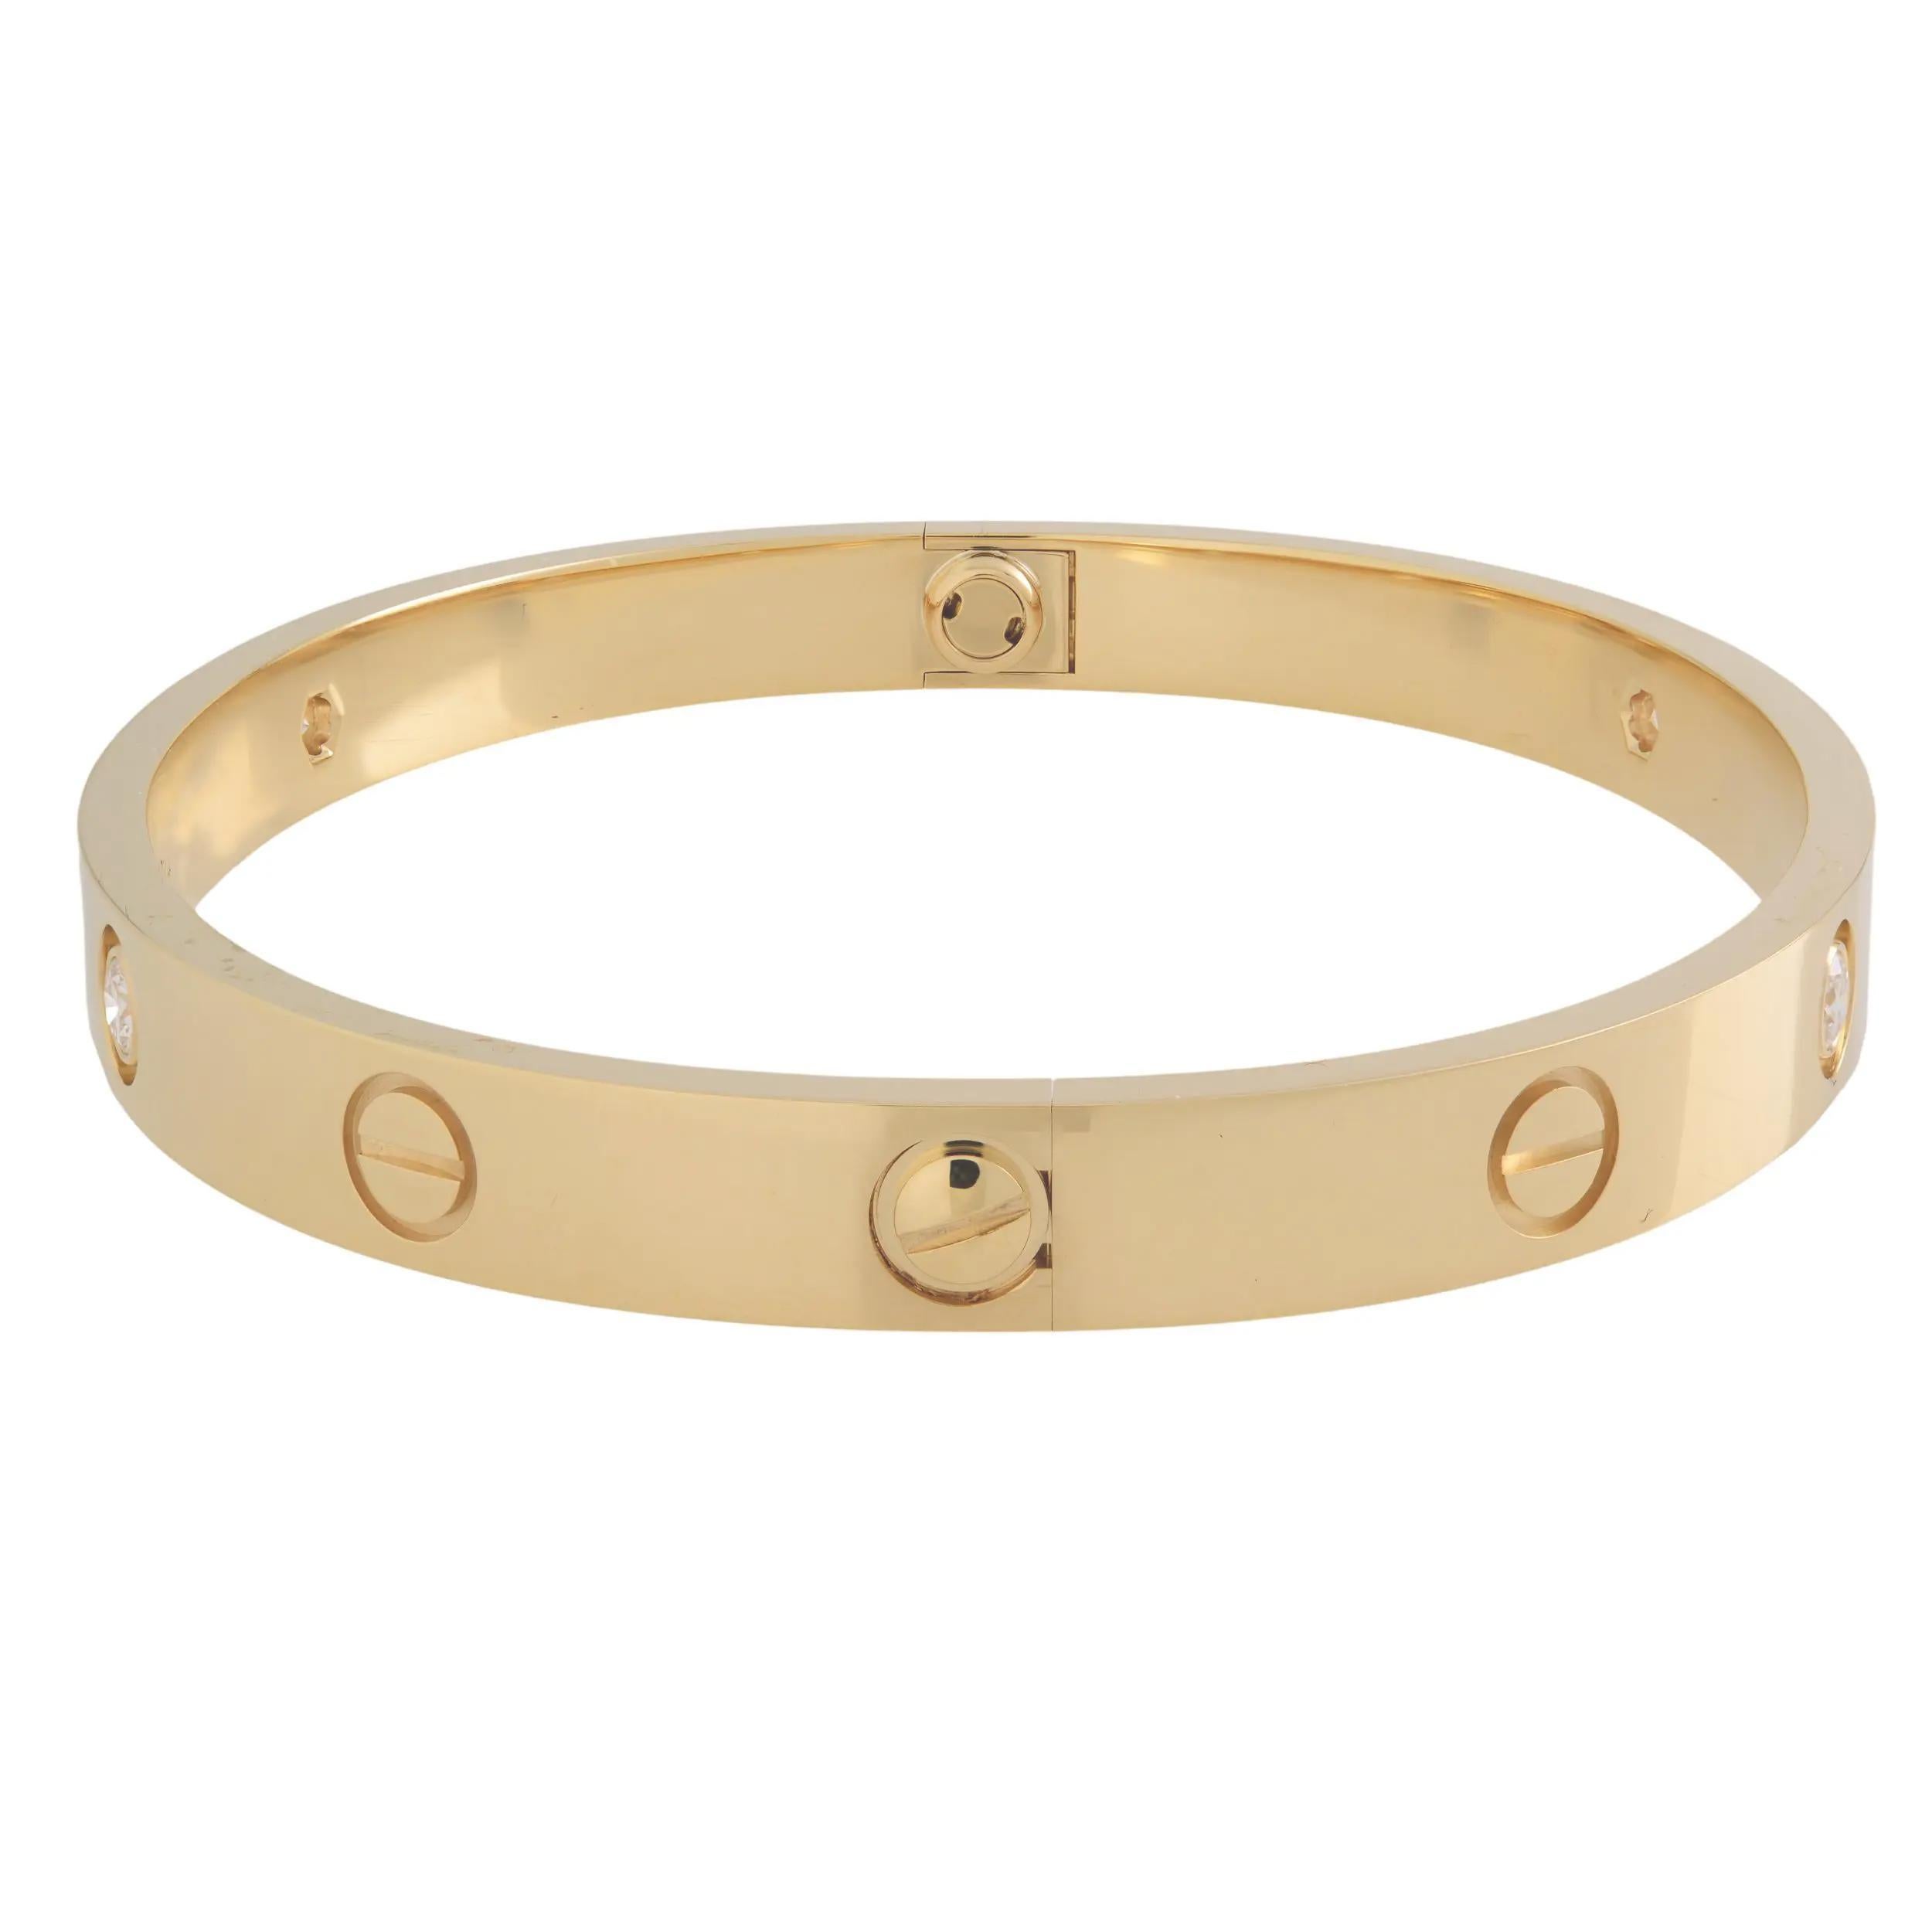 Cartier LOVE Armband aus 18 Karat Gelbgold, besetzt mit 4 runden Diamanten mit Brillantschliff von 0,42 Karat. Ein eng anliegendes, ovales Armband, das aus zwei starren Bögen besteht, die am Handgelenk getragen und mit einem speziellen